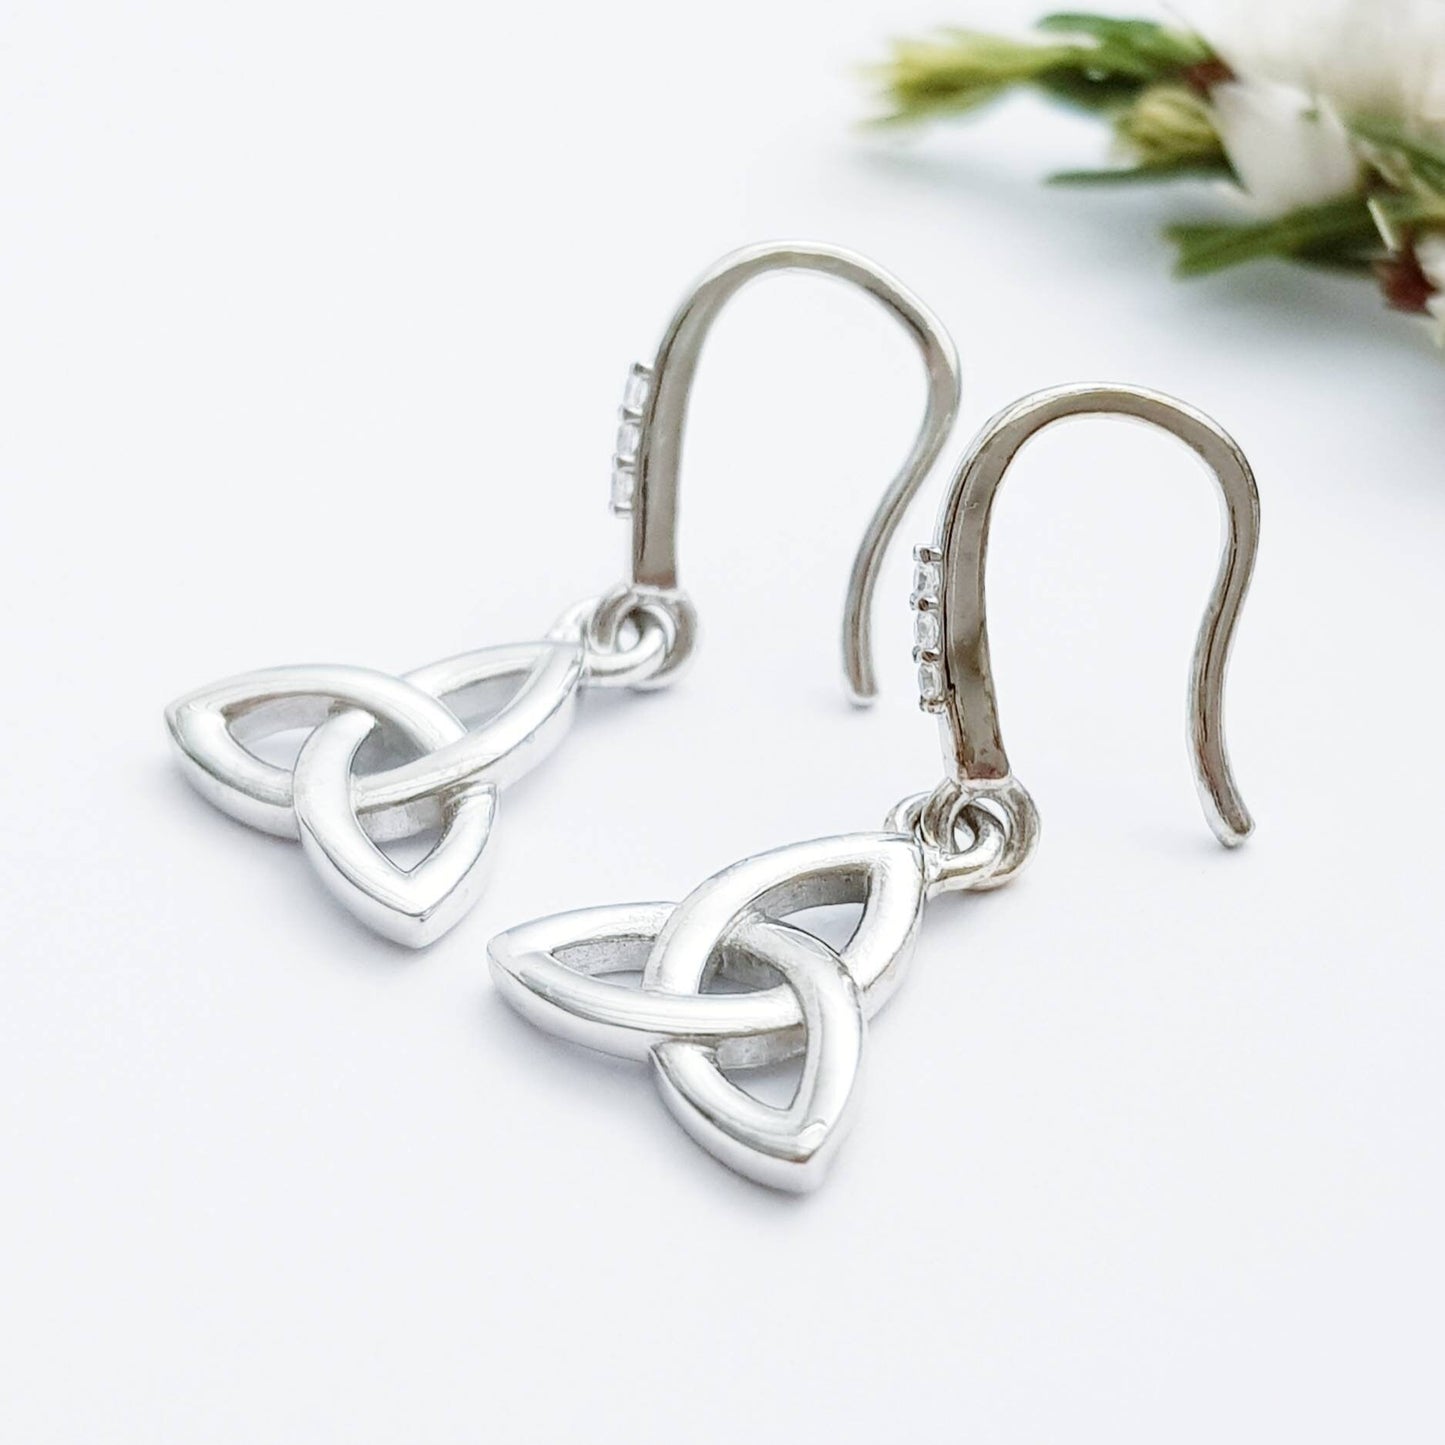 Minimal Celtic drop Earrings, trinity knot French wire earrings, small silver Celtic earrings